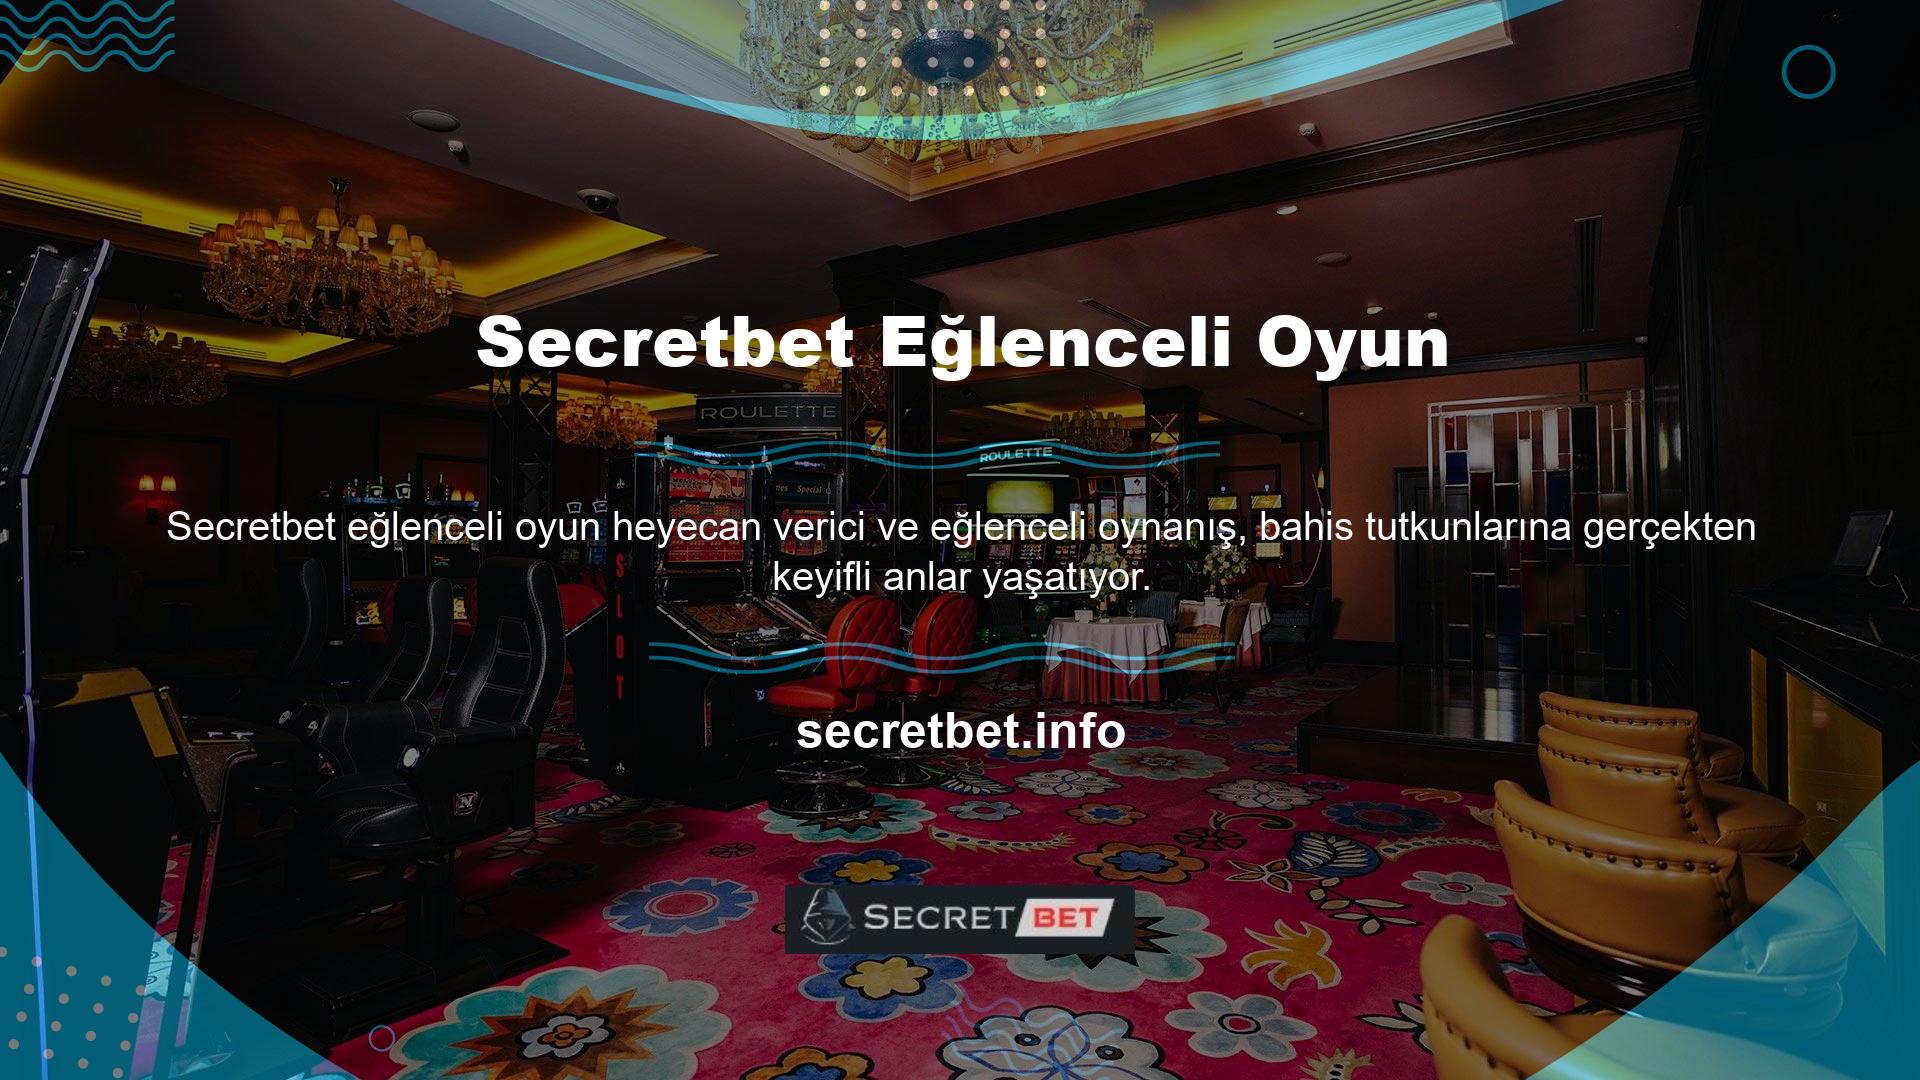 Bu web sitesinde Secretbet üyeliği açabilir ve Secretbet üye oyunları serisine katılabilir ve çeşitli oyunlara bahis oynayabilirsiniz